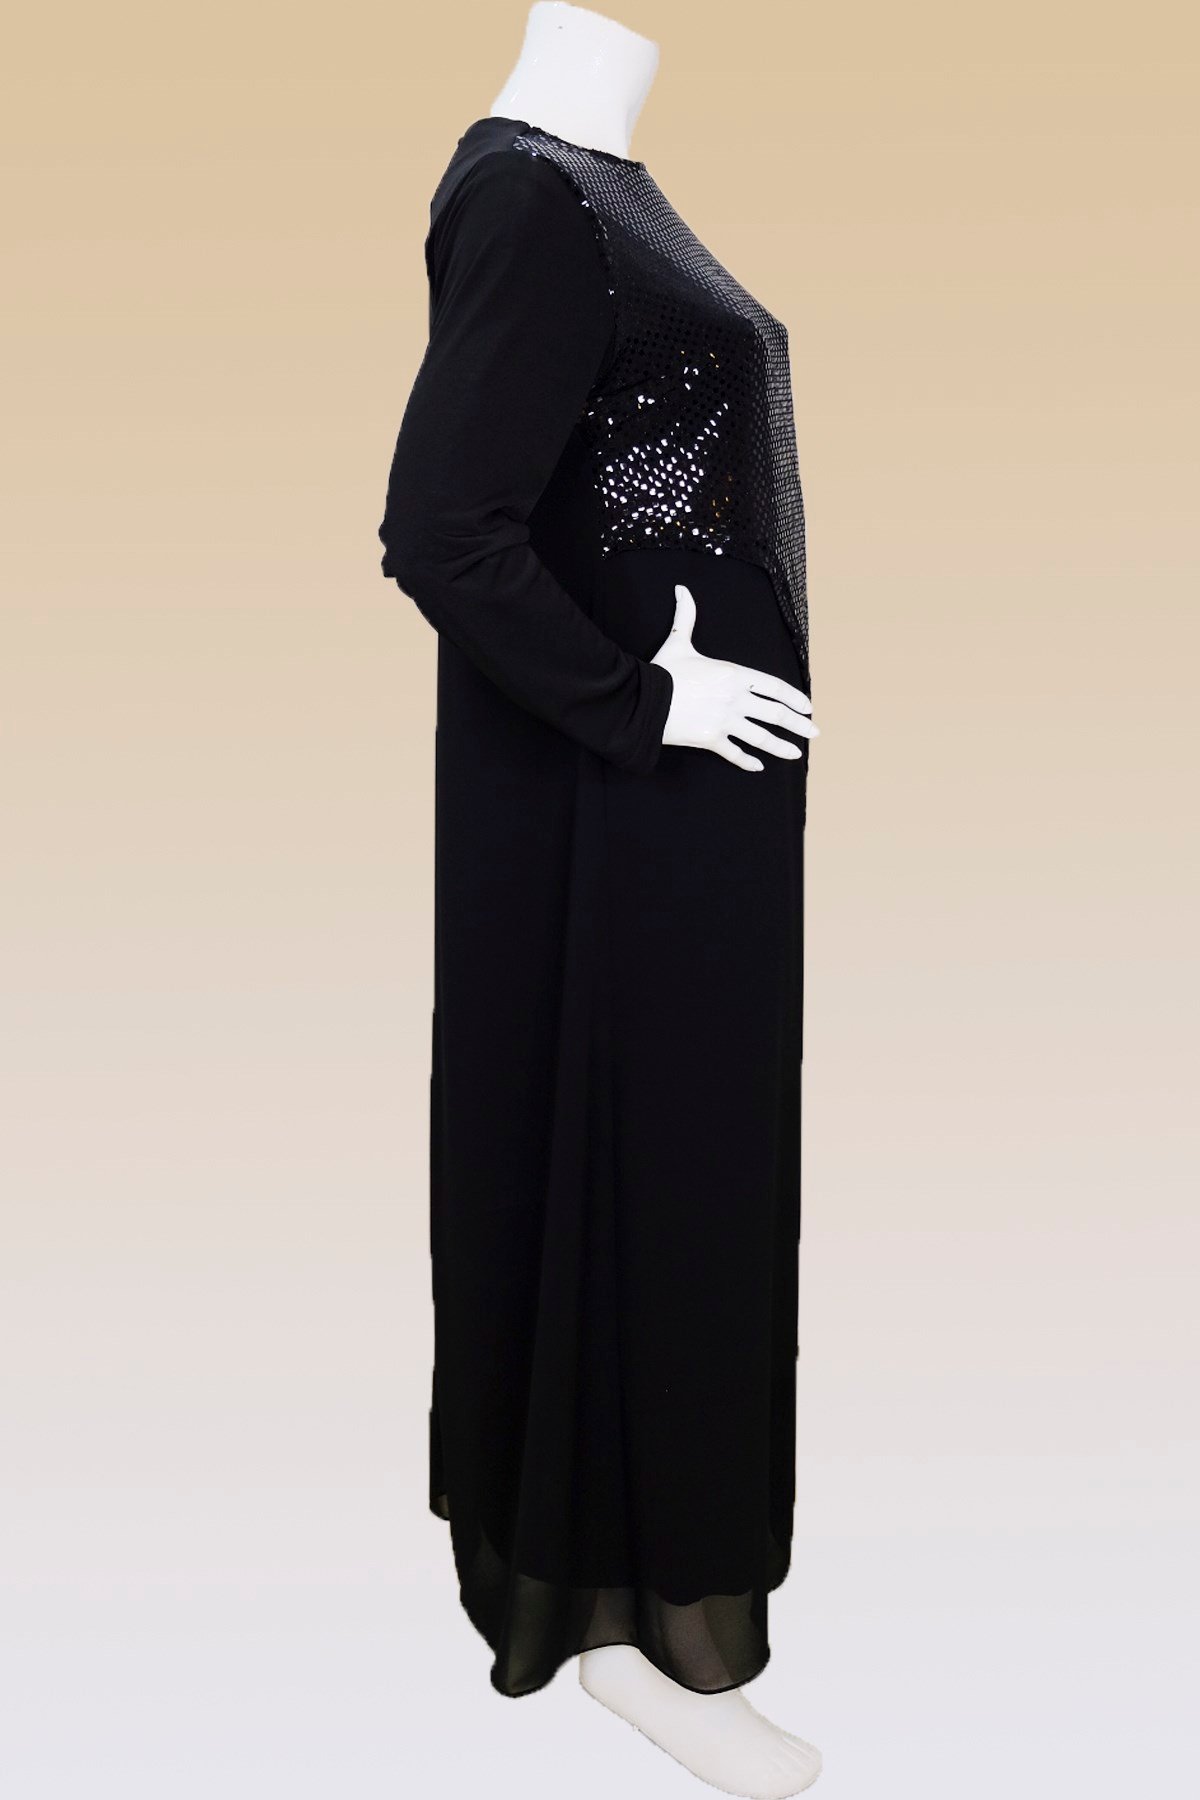 4052 - Fatma Danışman Abiye Elbise Modelleri